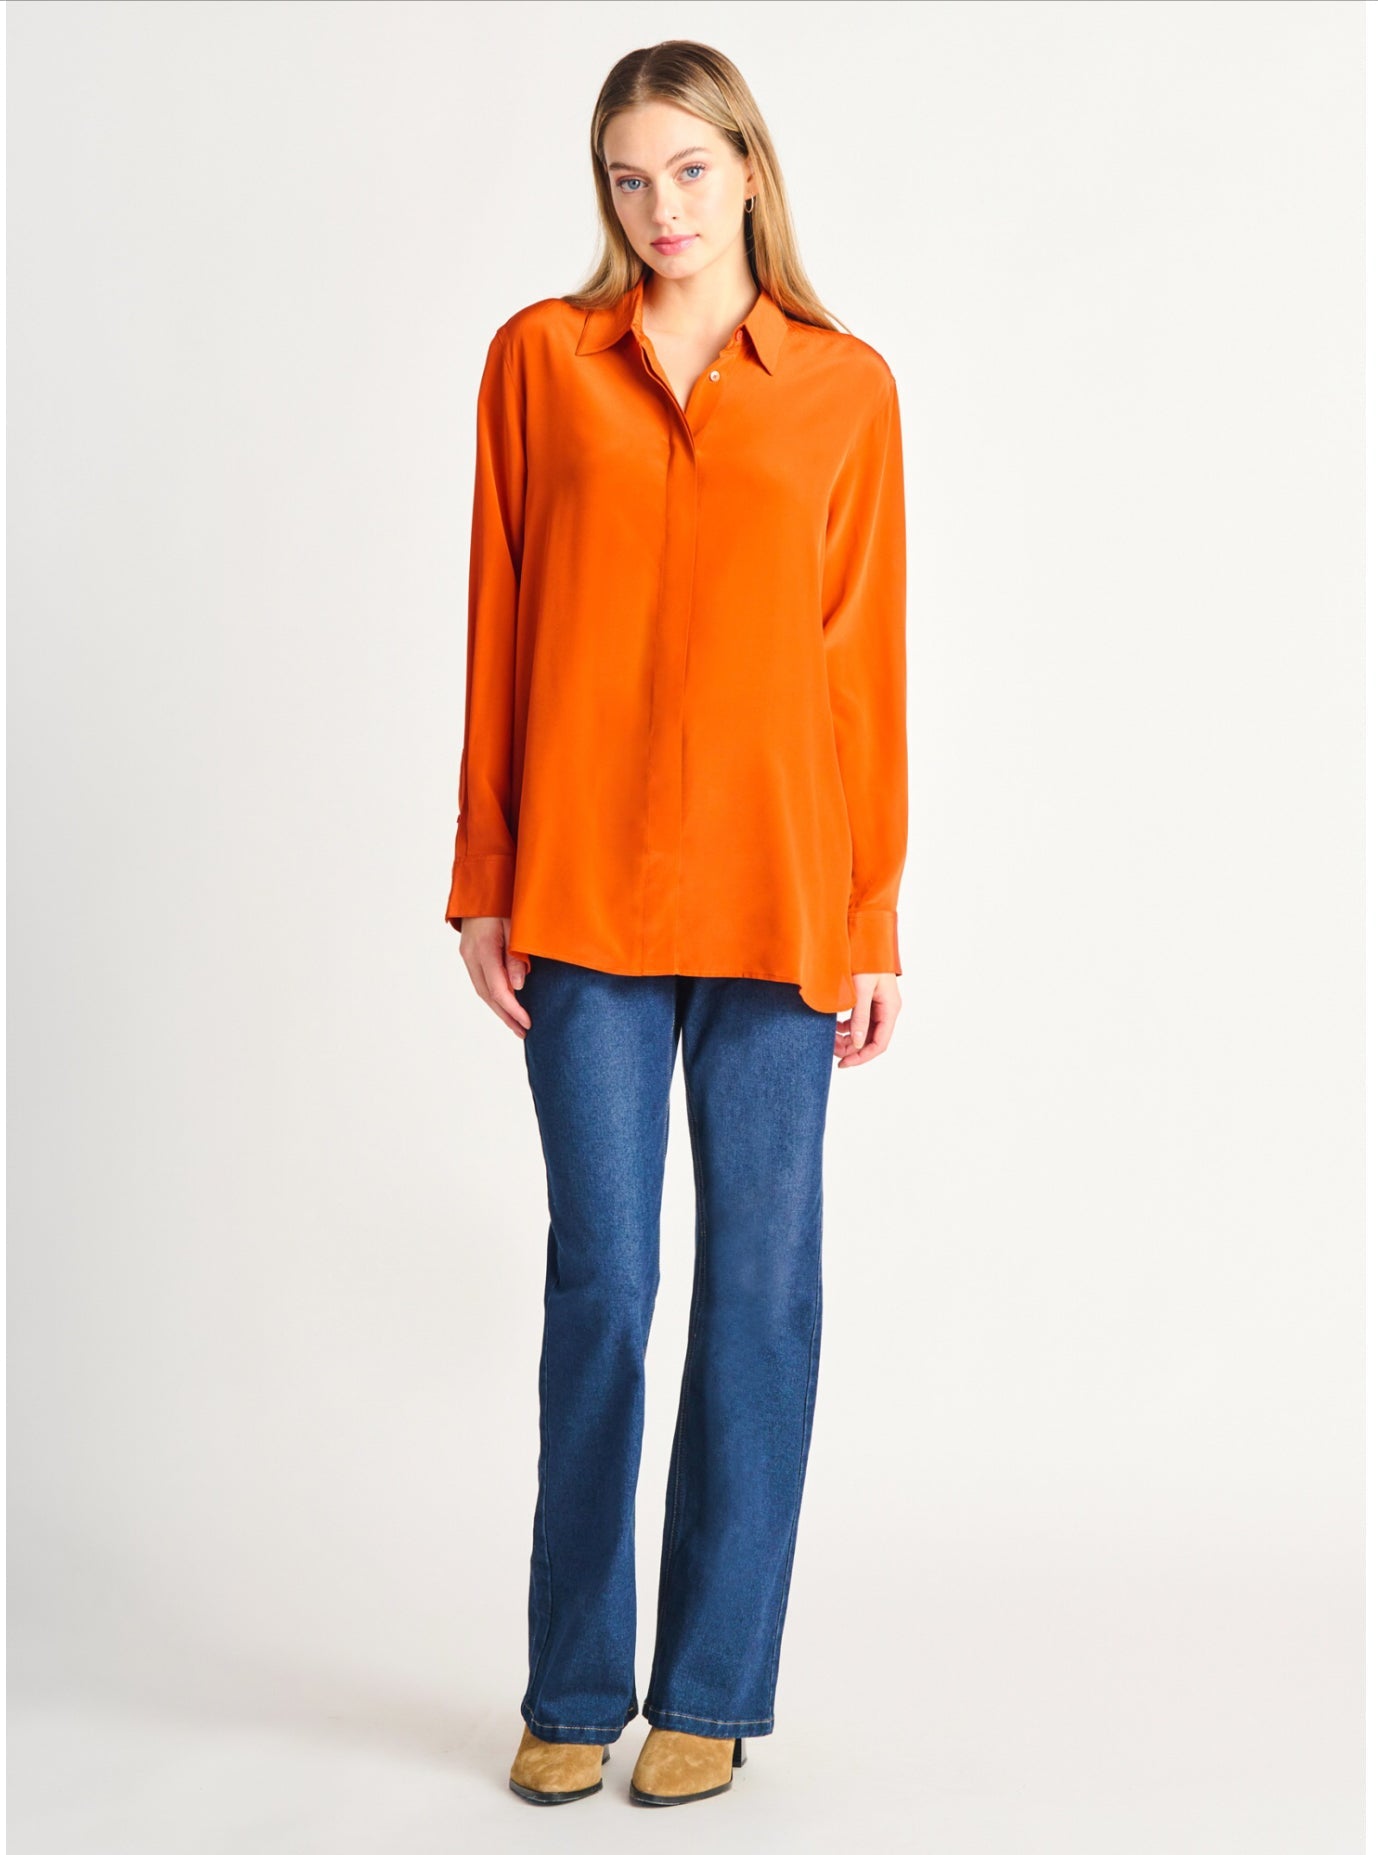 Hidden placket button front blouse - burnt orange - Blue Sky Clothing & Lingerie